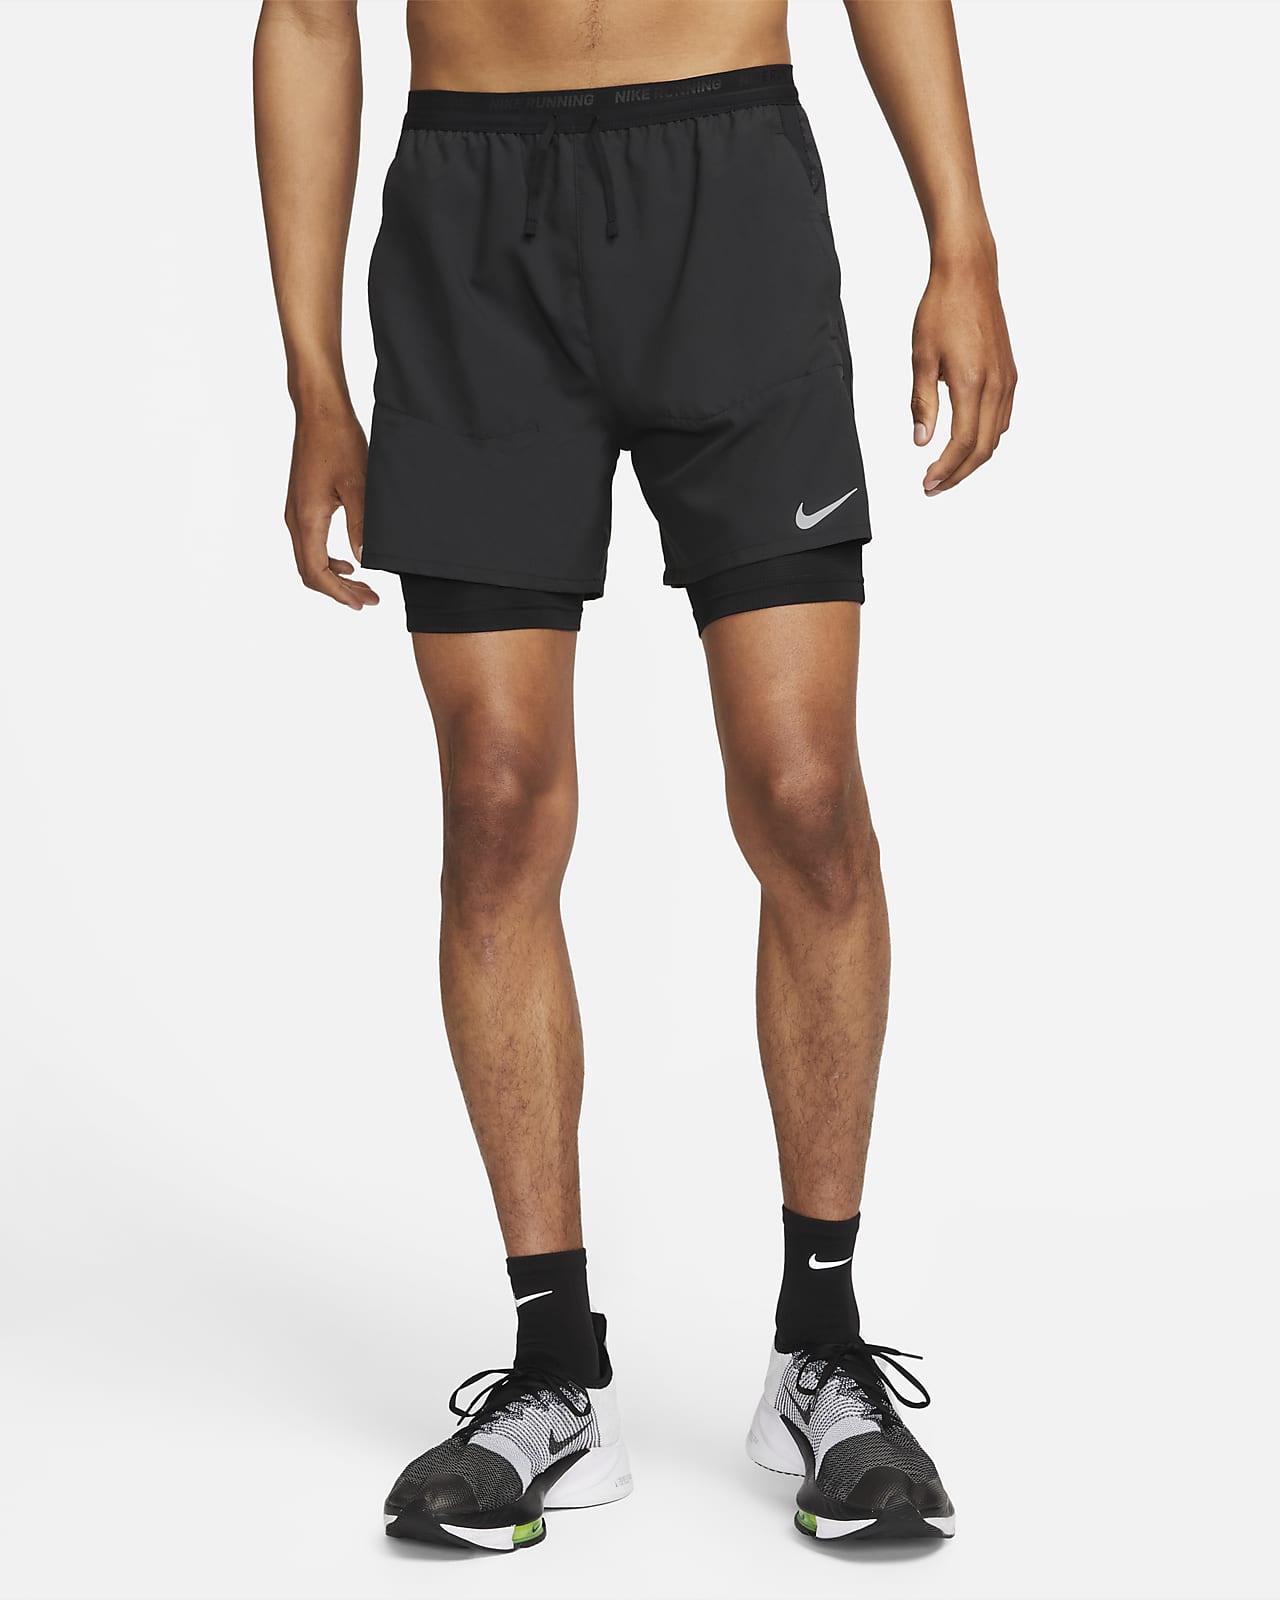 Ανδρικό σορτς για τρέξιμο 2 σε 1 Nike Dri-FIT Stride 18 cm